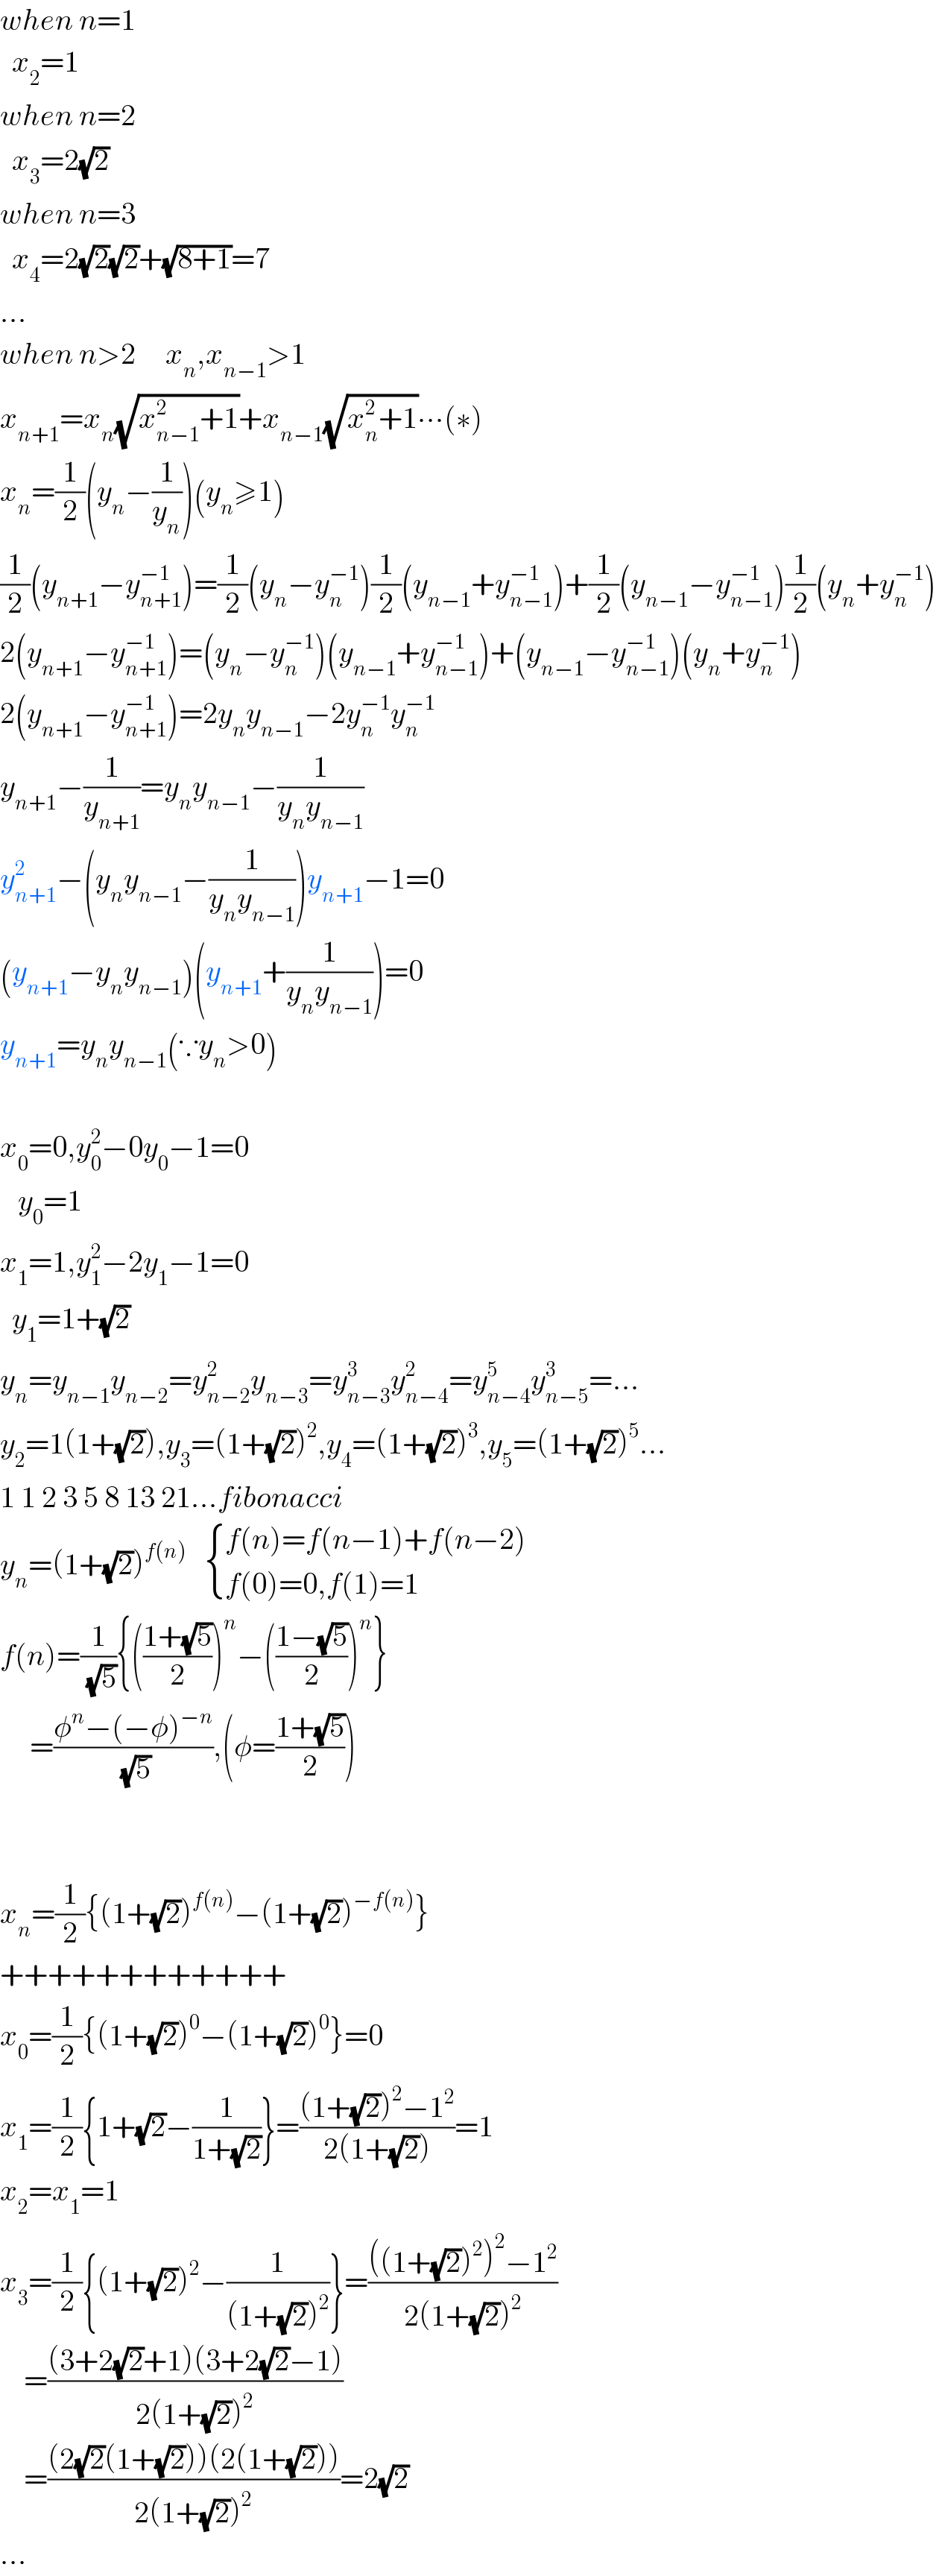 when n=1    x_2 =1  when n=2    x_3 =2(√2)  when n=3    x_4 =2(√2)(√2)+(√(8+1))=7  ...  when n>2     x_n ,x_(n−1) >1  x_(n+1) =x_n (√(x_(n−1) ^2 +1))+x_(n−1) (√(x_n ^2 +1))∙∙∙(∗)  x_n =(1/2)(y_n −(1/y_n ))(y_n ≥1)  (1/2)(y_(n+1) −y_(n+1) ^(−1) )=(1/2)(y_n −y_n ^(−1) )(1/2)(y_(n−1) +y_(n−1) ^(−1) )+(1/2)(y_(n−1) −y_(n−1) ^(−1) )(1/2)(y_n +y_n ^(−1) )  2(y_(n+1) −y_(n+1) ^(−1) )=(y_n −y_n ^(−1) )(y_(n−1) +y_(n−1) ^(−1) )+(y_(n−1) −y_(n−1) ^(−1) )(y_n +y_n ^(−1) )  2(y_(n+1) −y_(n+1) ^(−1) )=2y_n y_(n−1) −2y_n ^(−1) y_n ^(−1)   y_(n+1) −(1/y_(n+1) )=y_n y_(n−1) −(1/(y_n y_(n−1) ))  y_(n+1) ^2 −(y_n y_(n−1) −(1/(y_n y_(n−1) )))y_(n+1) −1=0  (y_(n+1) −y_n y_(n−1) )(y_(n+1) +(1/(y_n y_(n−1) )))=0  y_(n+1) =y_n y_(n−1) (∵y_n >0)    x_0 =0,y_0 ^2 −0y_0 −1=0     y_0 =1  x_1 =1,y_1 ^2 −2y_1 −1=0    y_1 =1+(√2)  y_n =y_(n−1) y_(n−2) =y_(n−2) ^2 y_(n−3) =y_(n−3) ^3 y_(n−4) ^2 =y_(n−4) ^5 y_(n−5) ^3 =...  y_2 =1(1+(√2)),y_3 =(1+(√2))^2 ,y_4 =(1+(√2))^3 ,y_5 =(1+(√2))^5 ...  1 1 2 3 5 8 13 21...fibonacci  y_n =(1+(√2))^(f(n))     { ((f(n)=f(n−1)+f(n−2))),((f(0)=0,f(1)=1)) :}  f(n)=(1/(√5)){(((1+(√5))/2))^n −(((1−(√5))/2))^n }       =((φ^n −(−φ)^(−n) )/(√5)),(φ=((1+(√5))/2))      x_n =(1/2){(1+(√2))^(f(n)) −(1+(√2))^(−f(n)) }  ++++++++++++  x_0 =(1/2){(1+(√2))^0 −(1+(√2))^0 }=0  x_1 =(1/2){1+(√2)−(1/(1+(√2)))}=(((1+(√2))^2 −1^2 )/(2(1+(√2))))=1  x_2 =x_1 =1  x_3 =(1/2){(1+(√2))^2 −(1/((1+(√2))^2 ))}=((((1+(√2))^2 )^2 −1^2 )/(2(1+(√2))^2 ))      =(((3+2(√2)+1)(3+2(√2)−1))/(2(1+(√2))^2 ))      =(((2(√2)(1+(√2)))(2(1+(√2))))/(2(1+(√2))^2 ))=2(√2)  ...  